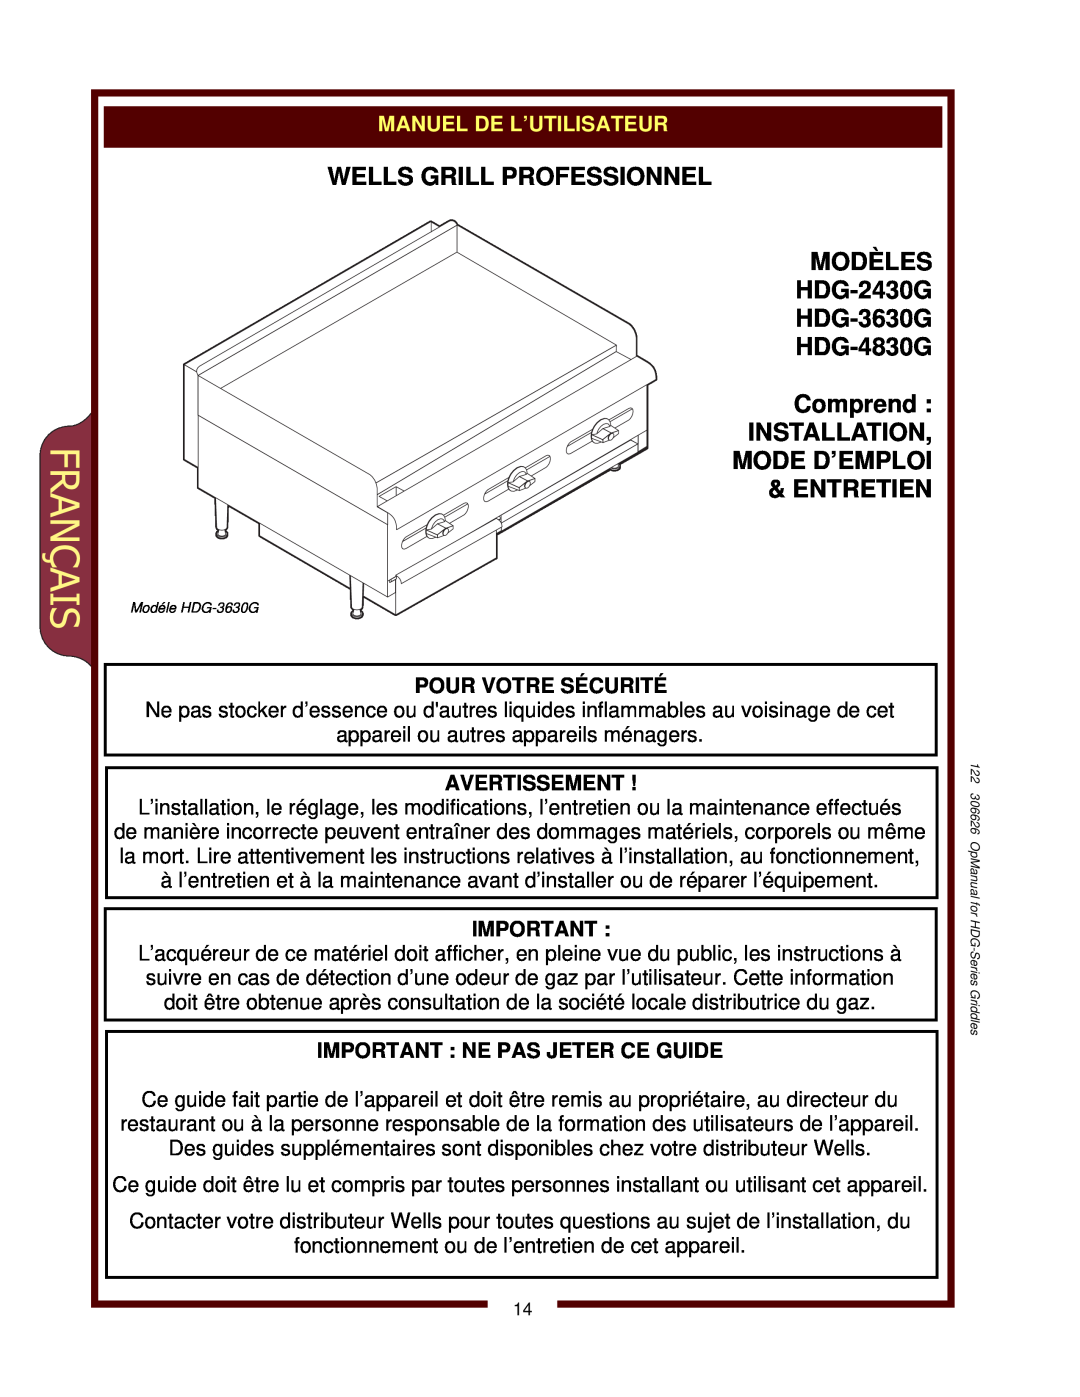 Wells Français, WELLS GRILL PROFESSIONNEL MODÈLES HDG-2430G, HDG-3630G HDG-4830G Comprend, Manuel De L’Utilisateur 